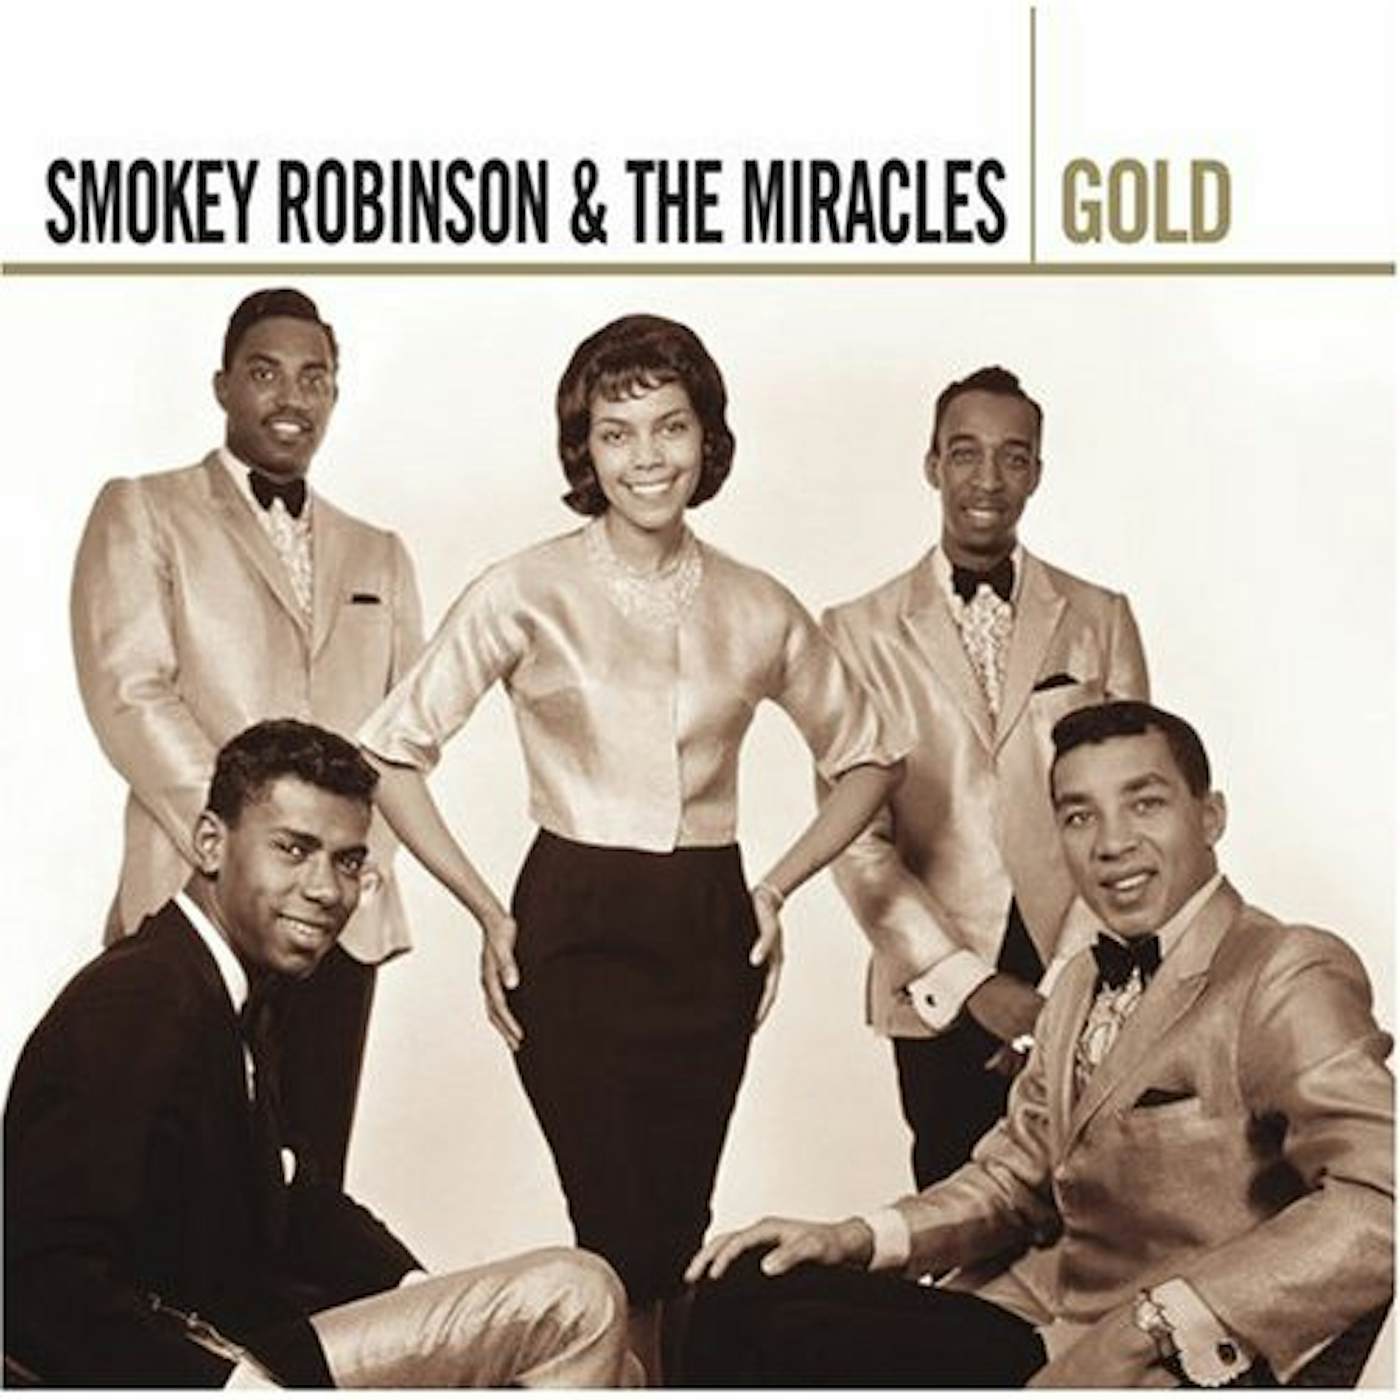 Smokey Robinson & The Miracles GOLD CD